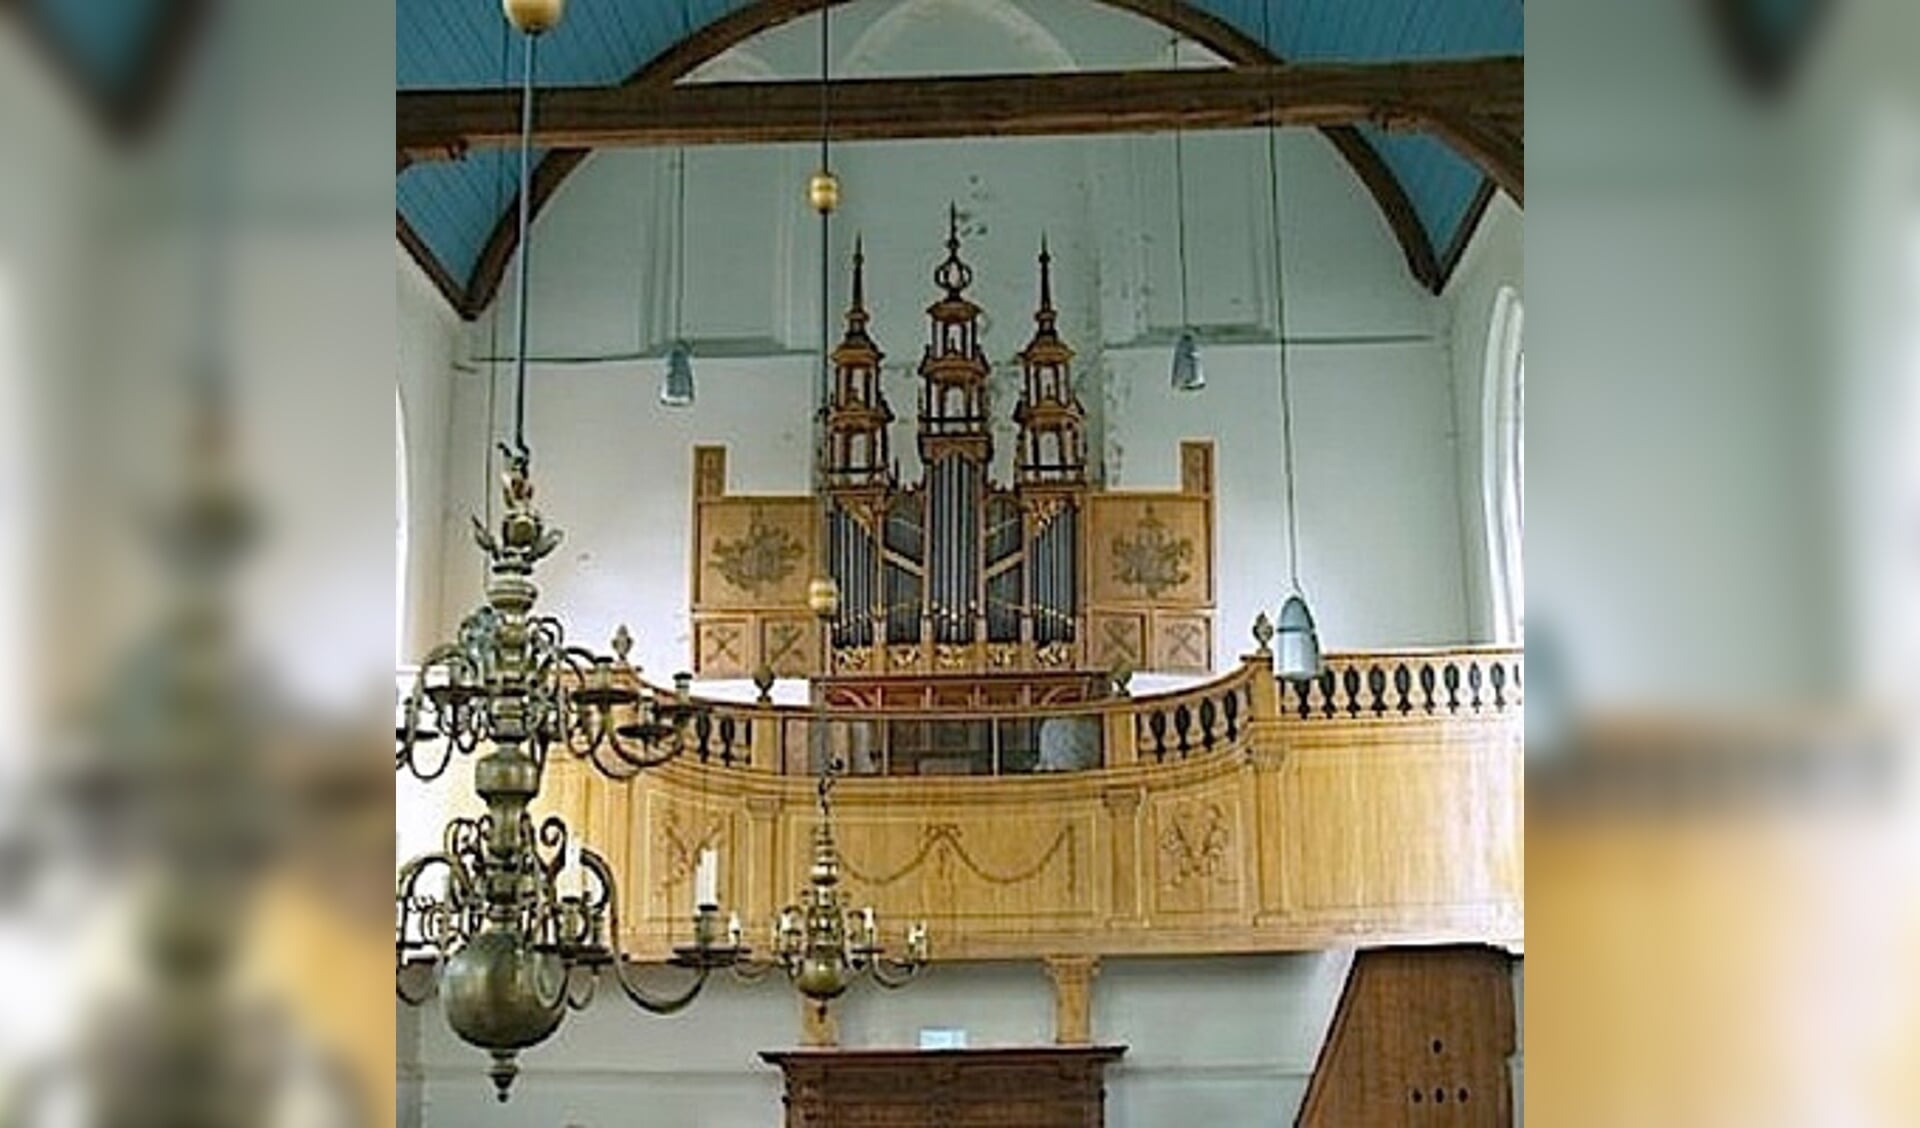 De kerk in Oosthuizen.